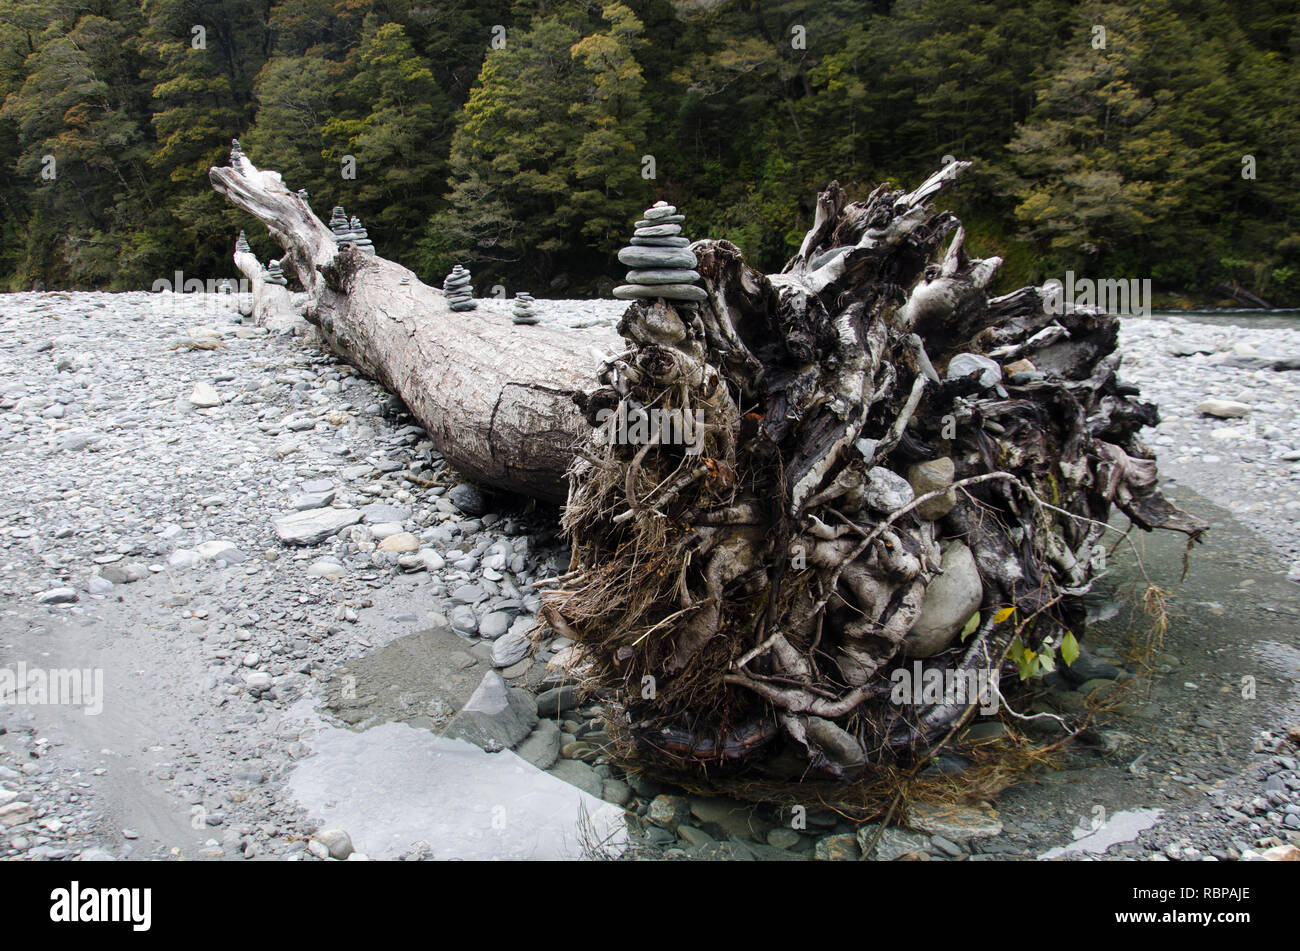 Nell'Isola Sud della Nuova Zelanda un albero caduto in un alveo pietroso è stata ornata dai viaggiatori con ordinatamente accatastati pietre in un gesto di pace Foto Stock